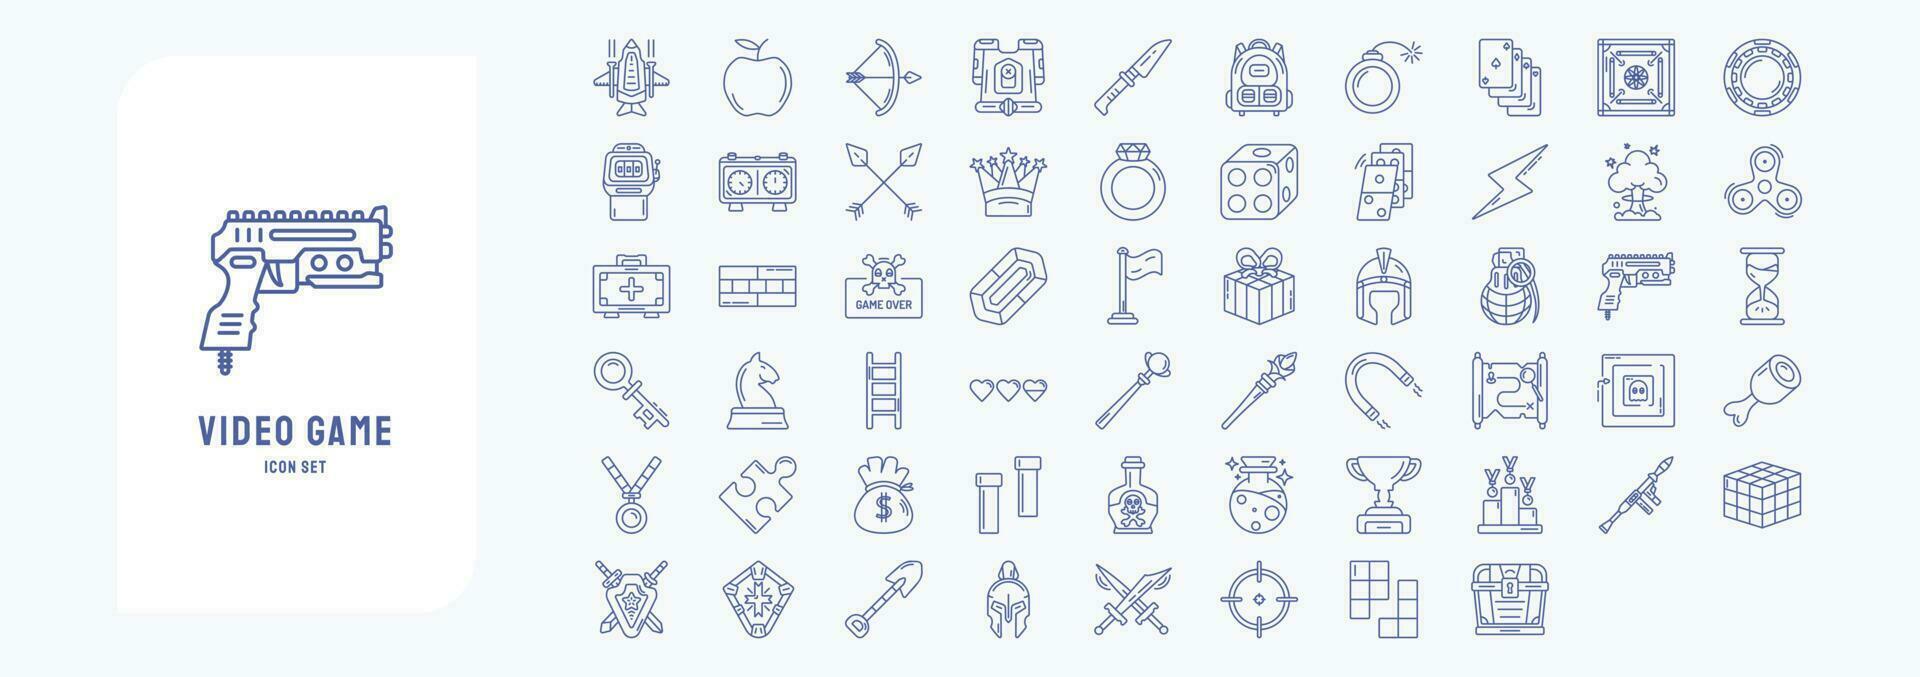 Sammlung von Symbole verbunden zu Video Spiel Elemente, einschließlich Symbole mögen Flugzeug, Rüstung, Krone, Würfel und Mehr vektor